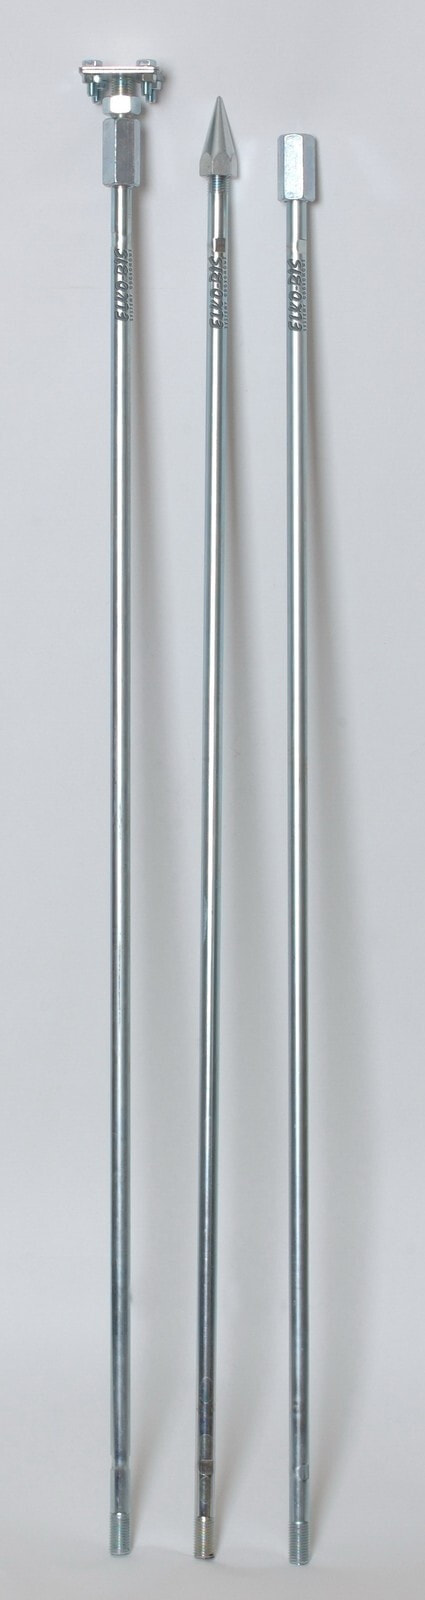 ELKO-BIS Uziom kompletny 3-metrowy 300x150x1,6cm ocynkowany ogniowo